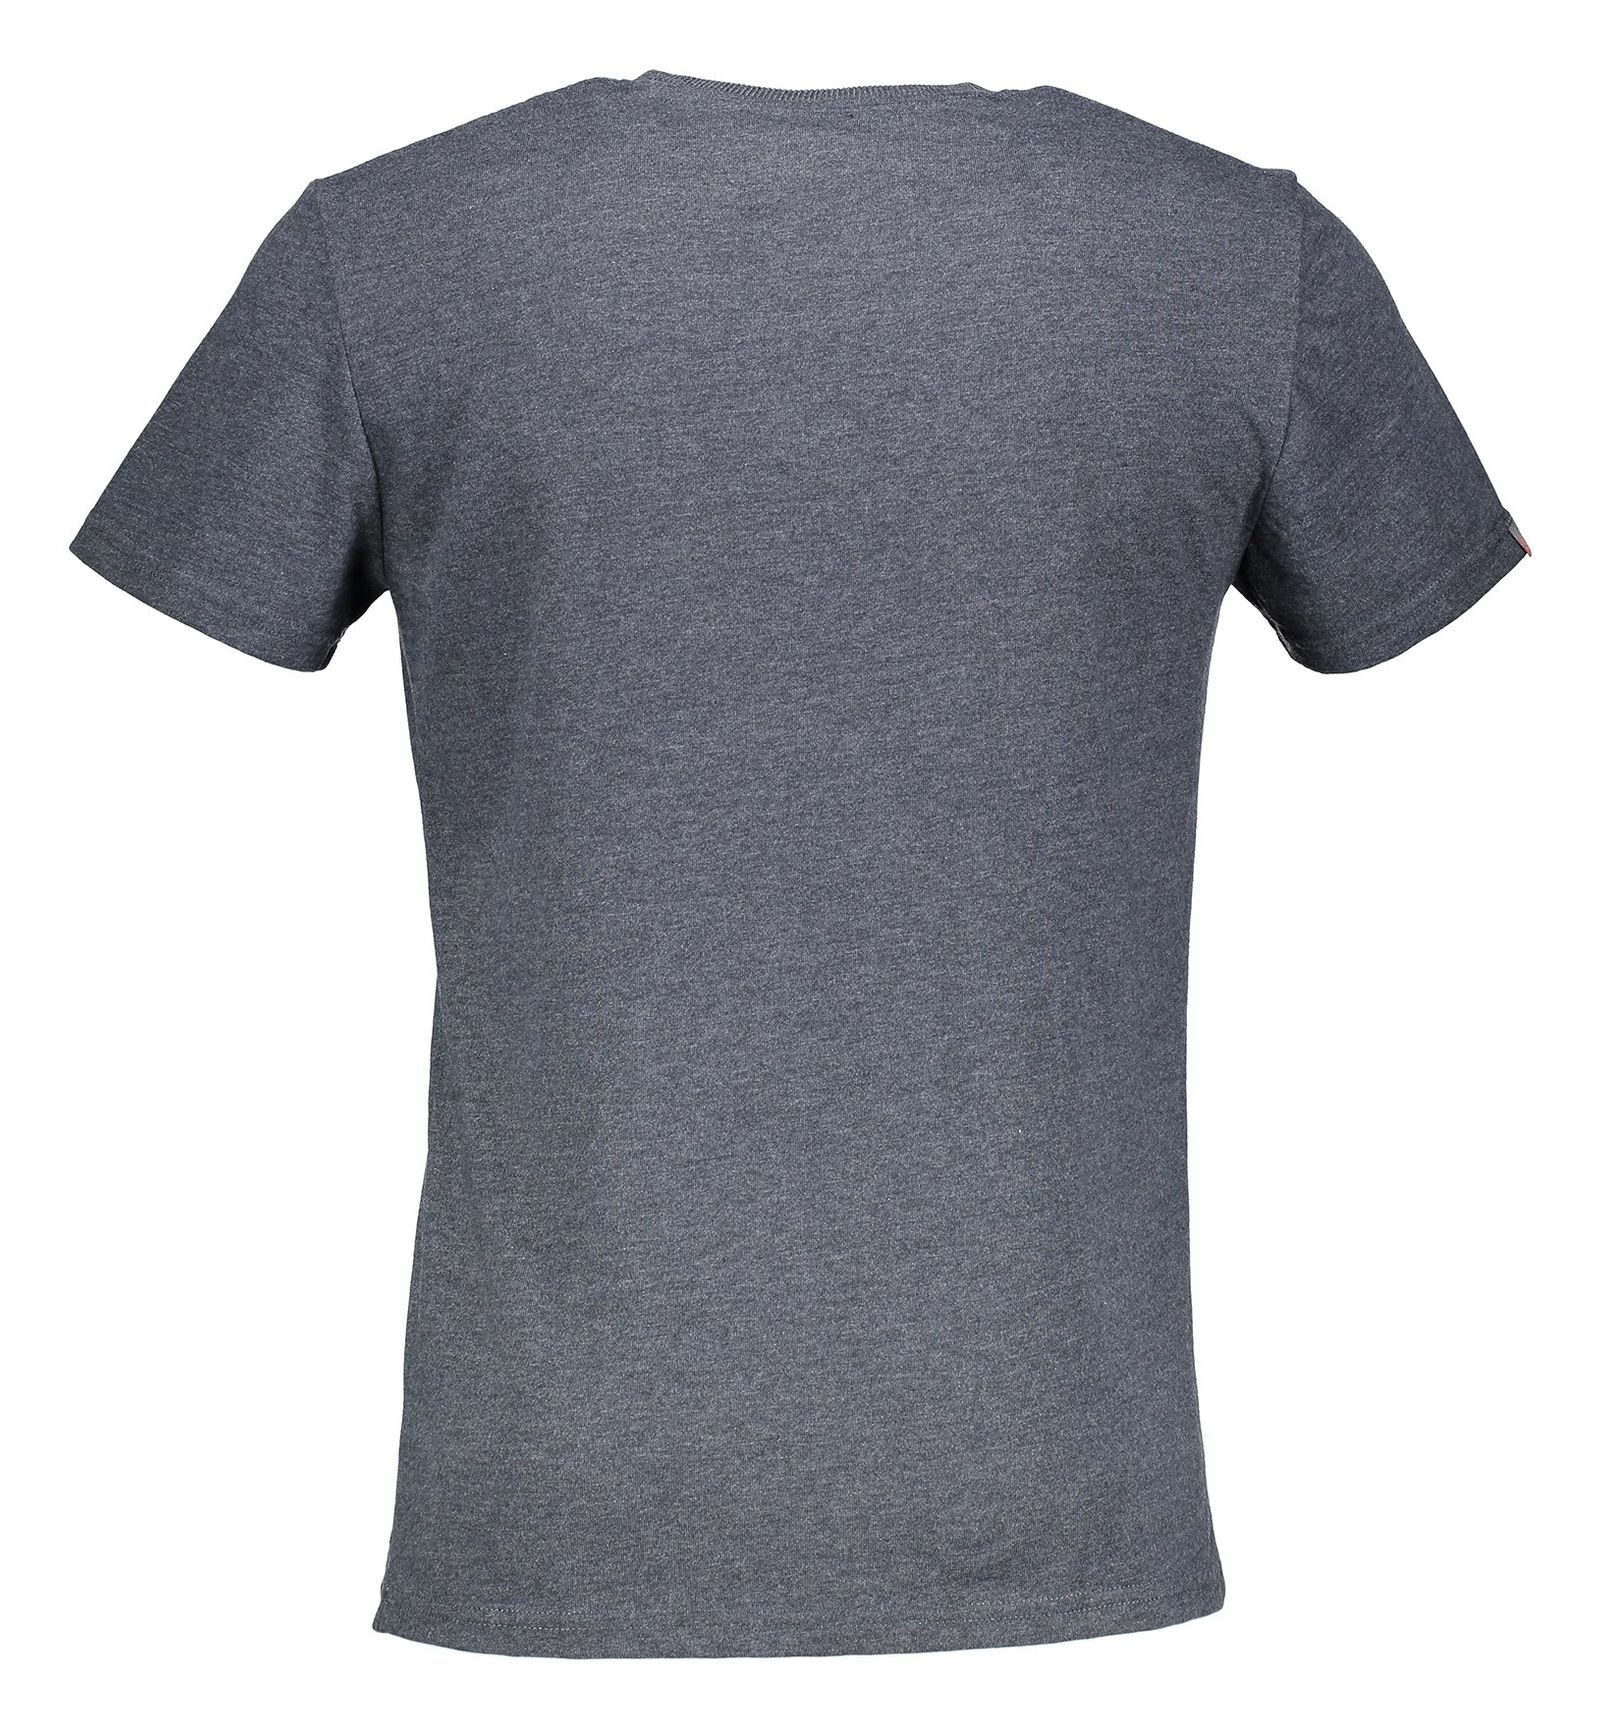 تی شرت یقه گرد مردانه - سوپردرای - زغالي تيره - 3